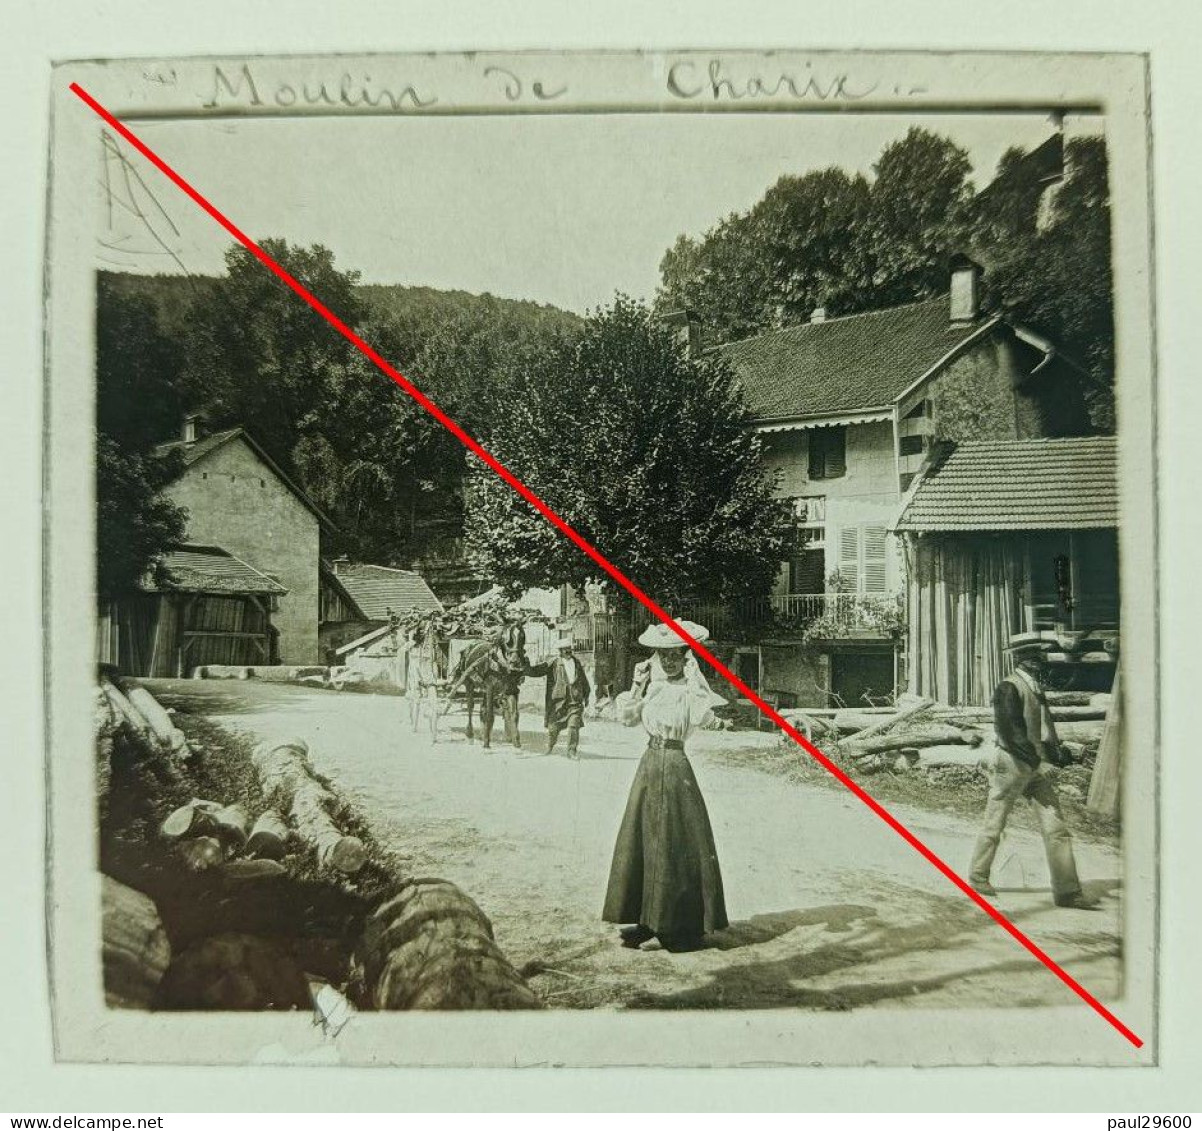 Photo Sur Plaque De Verre, L'ain, Moulin De Charix, Village, Maison, Rue, Attelage, Hangars, Bâtiments, Années 1930. - Diapositivas De Vidrio